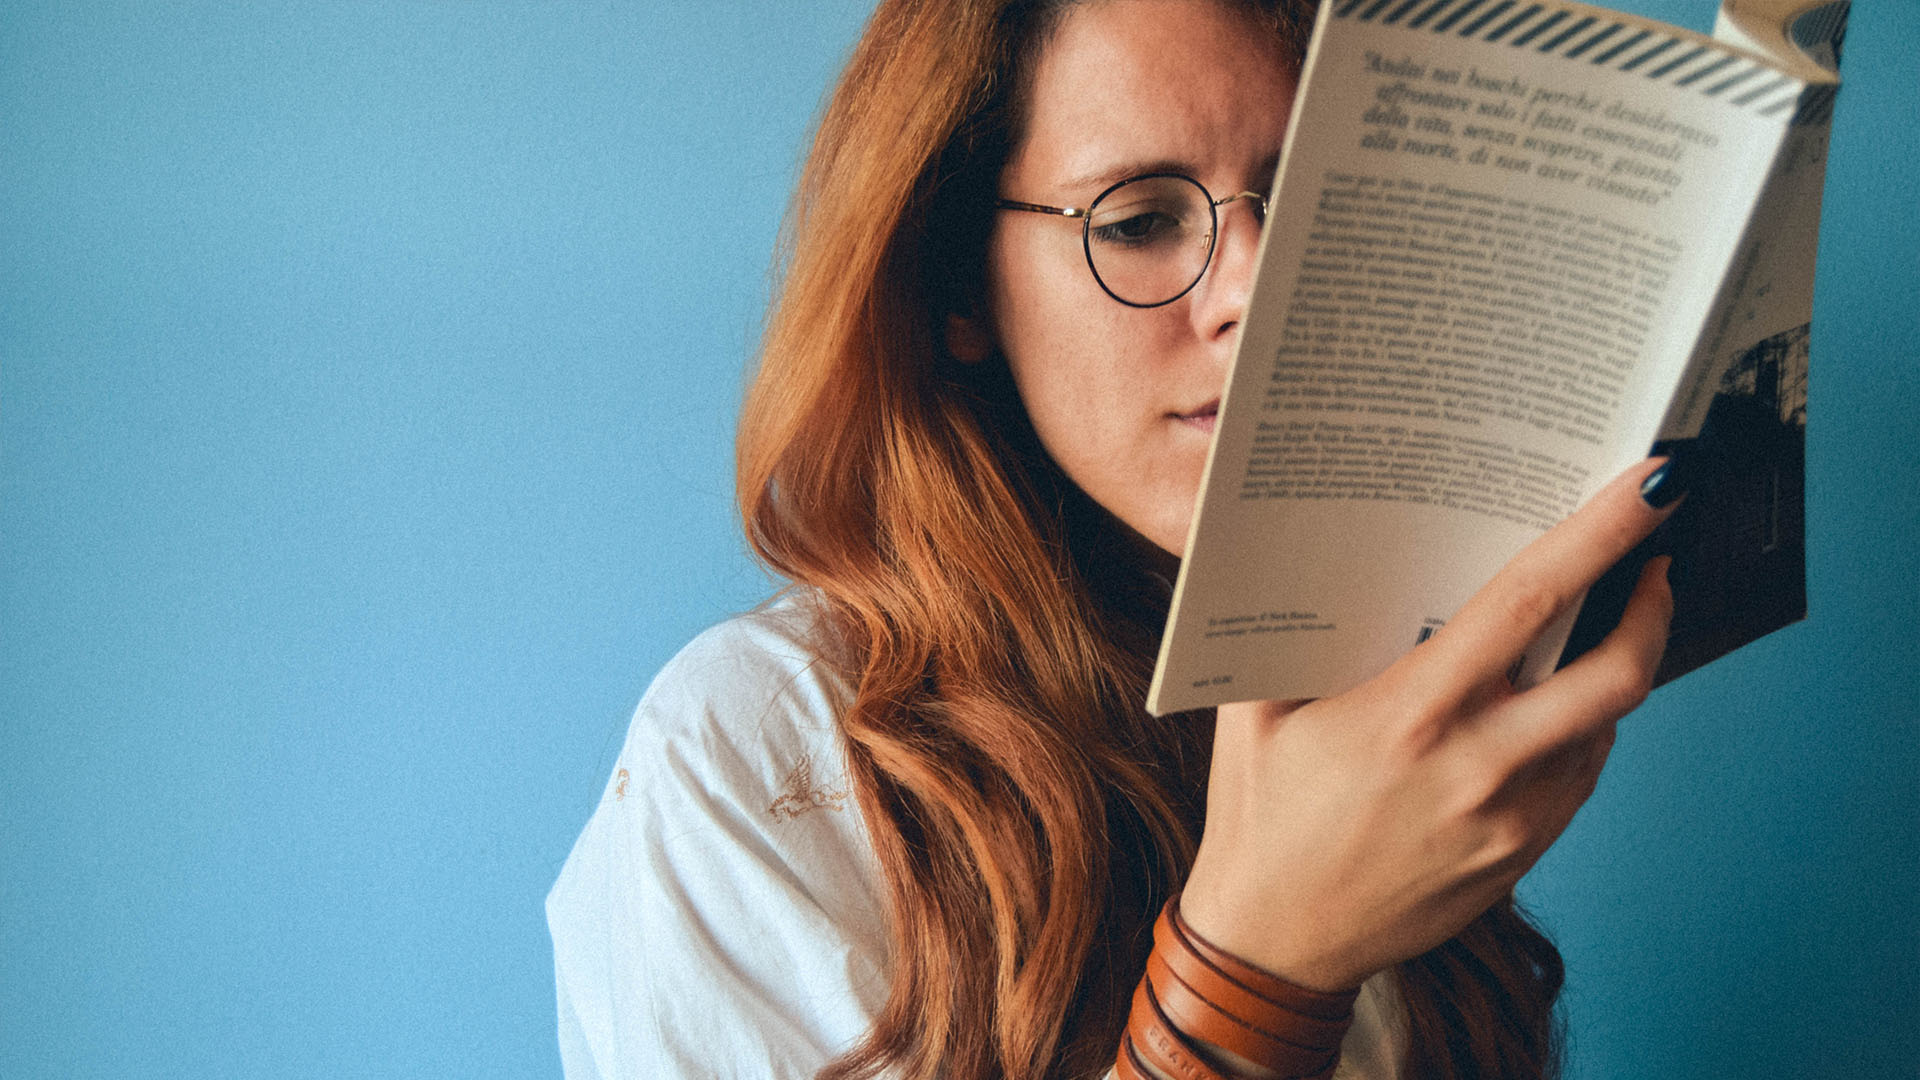 Rödhårig kvinna med rundade glasögon som håller i en bok som täcker halva ansiktet